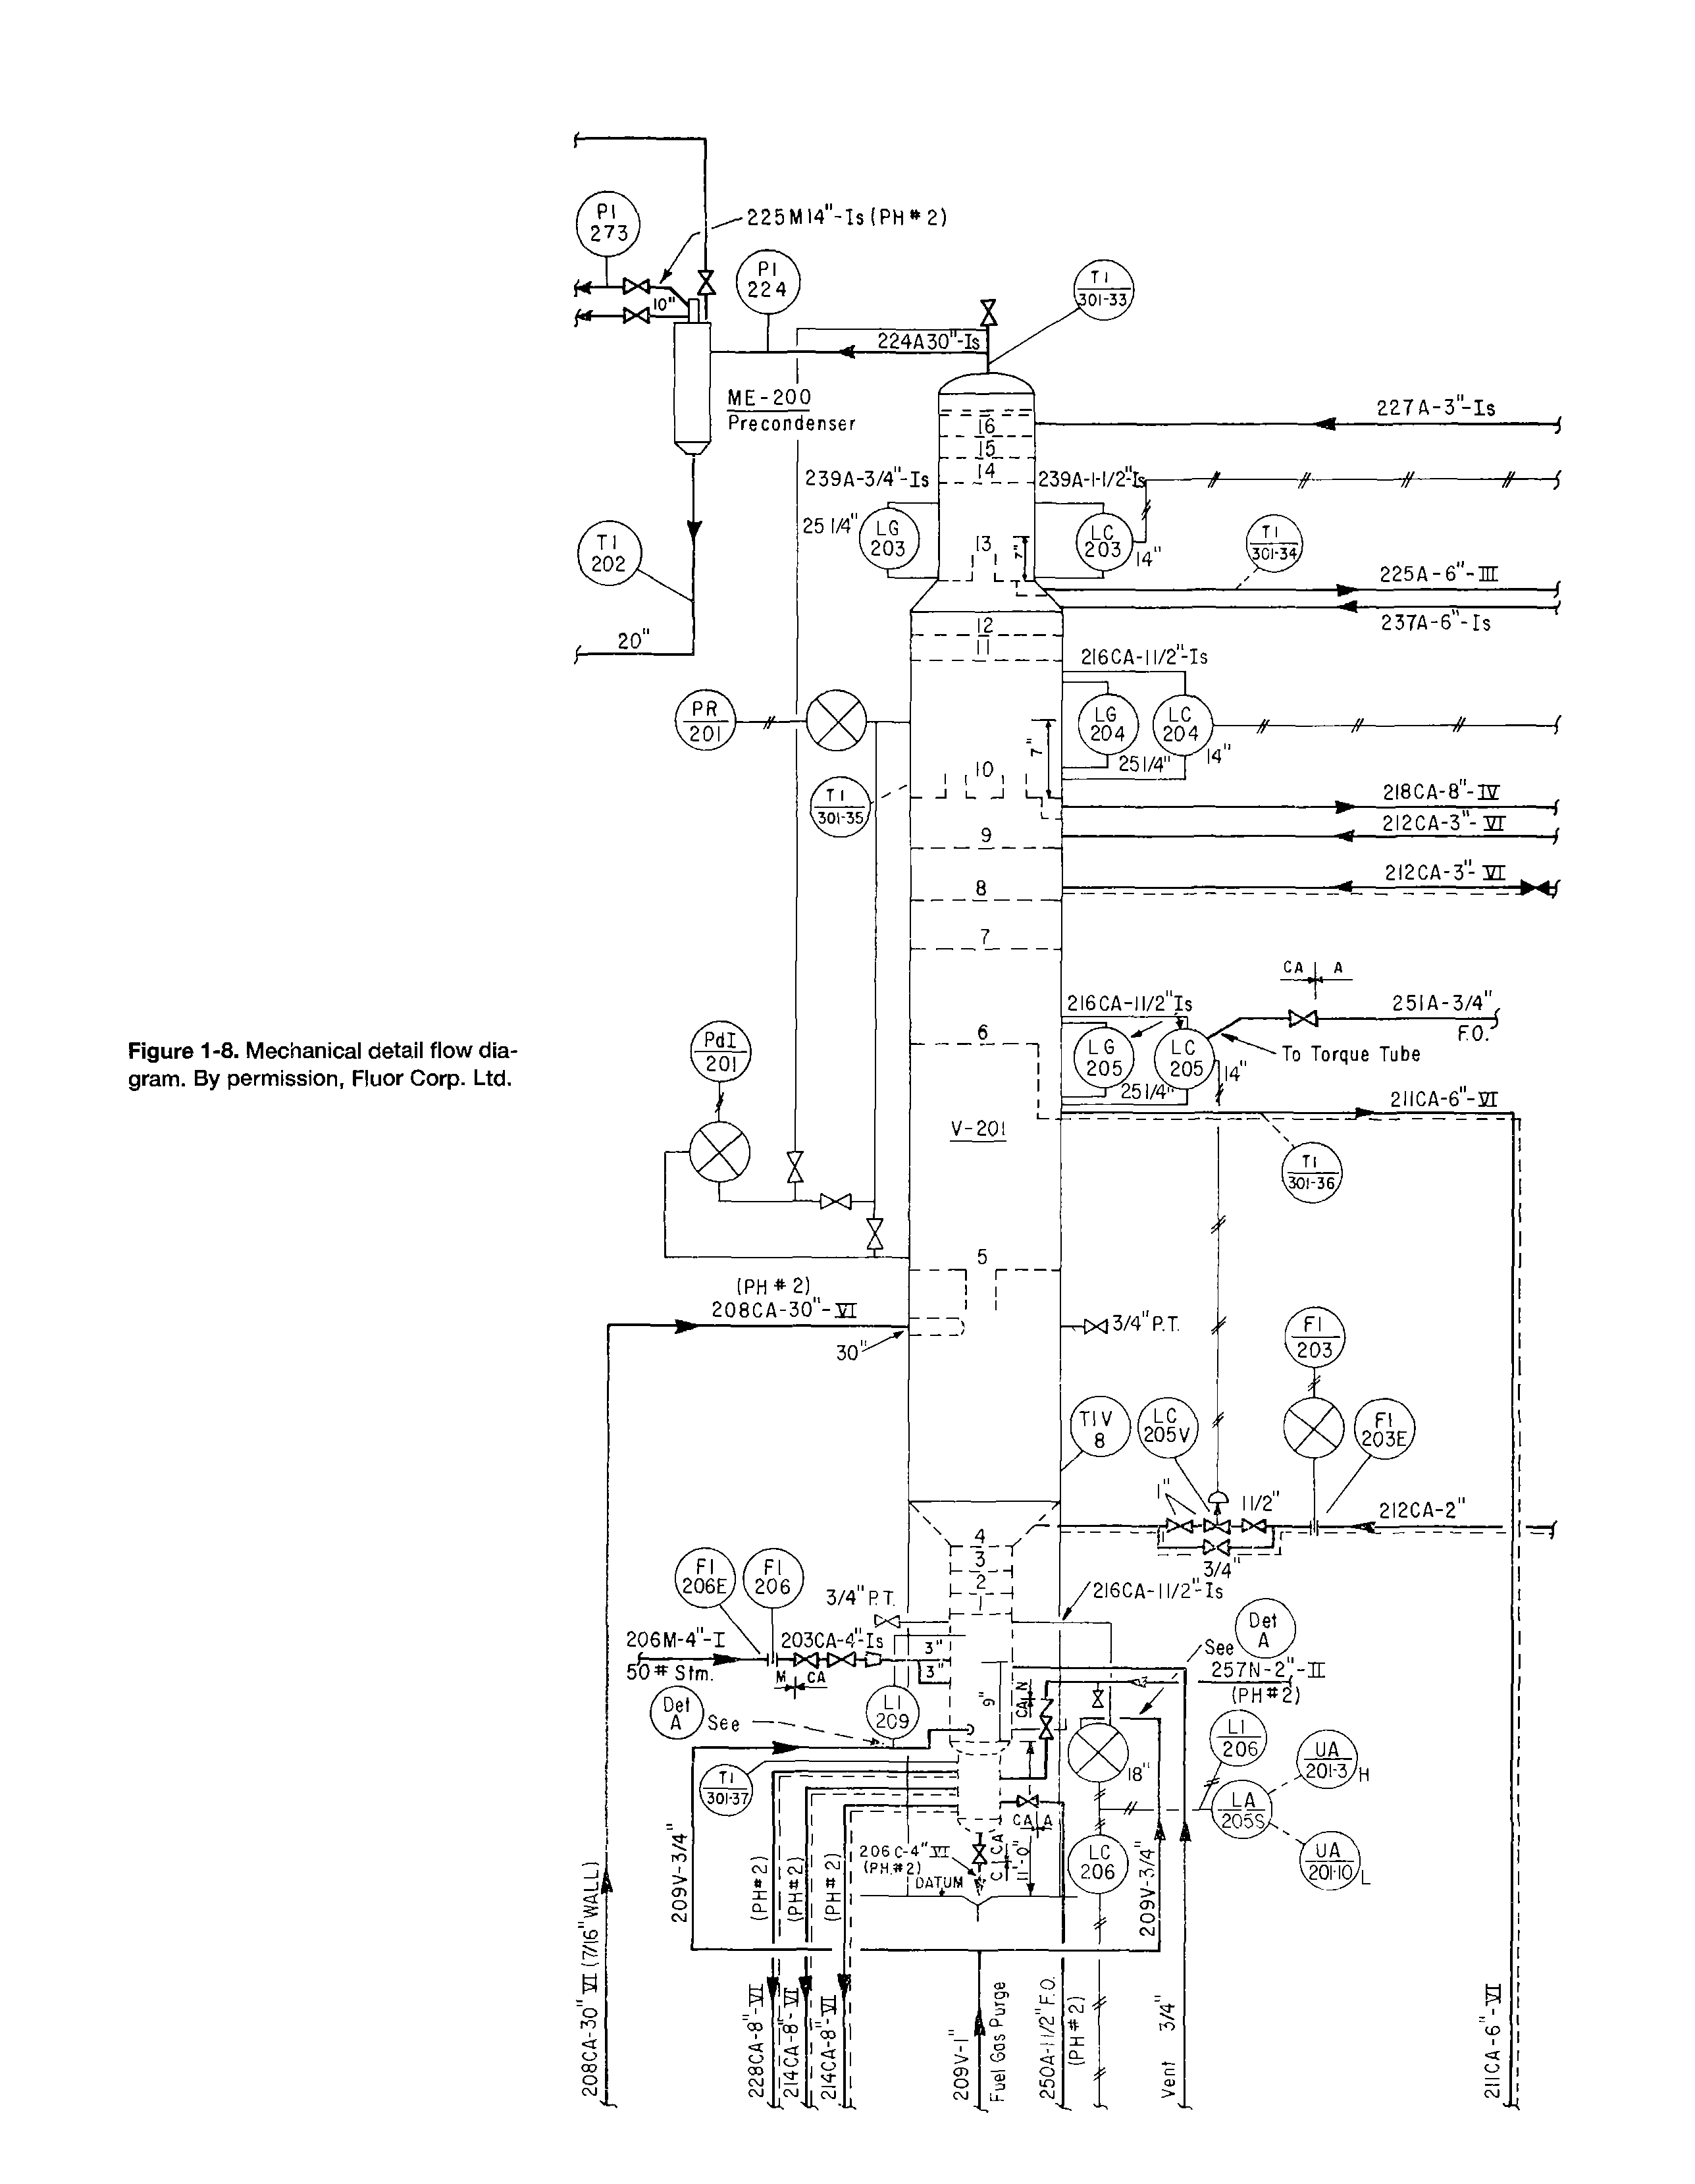 Figure 1-8. Mechanical detail flow diagram. By permission, Fluor Corp. Ltd.